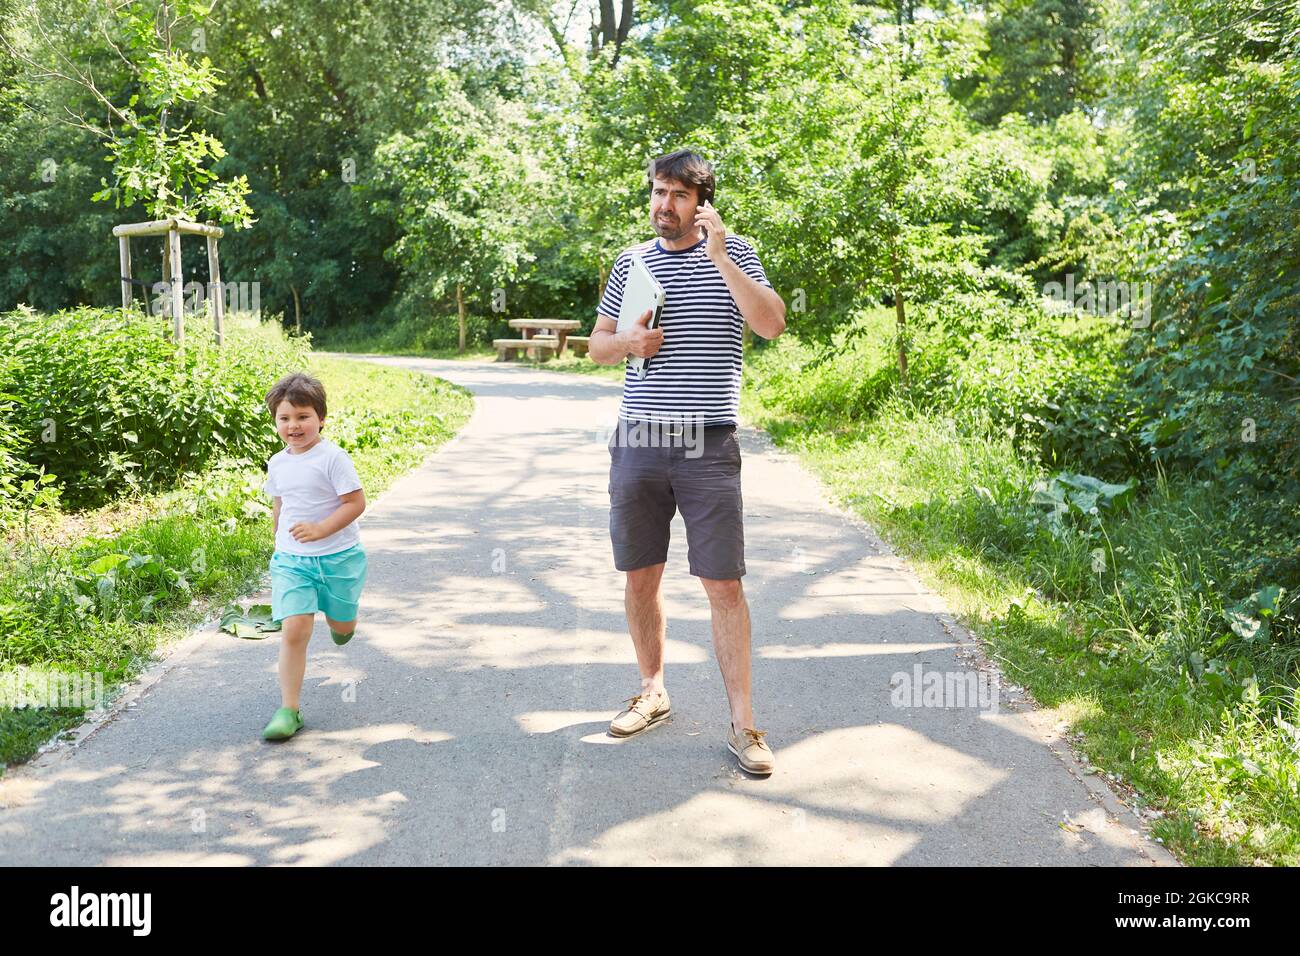 Père seul parlant sur téléphone portable avec son fils dans le parc vert en vacances Banque D'Images